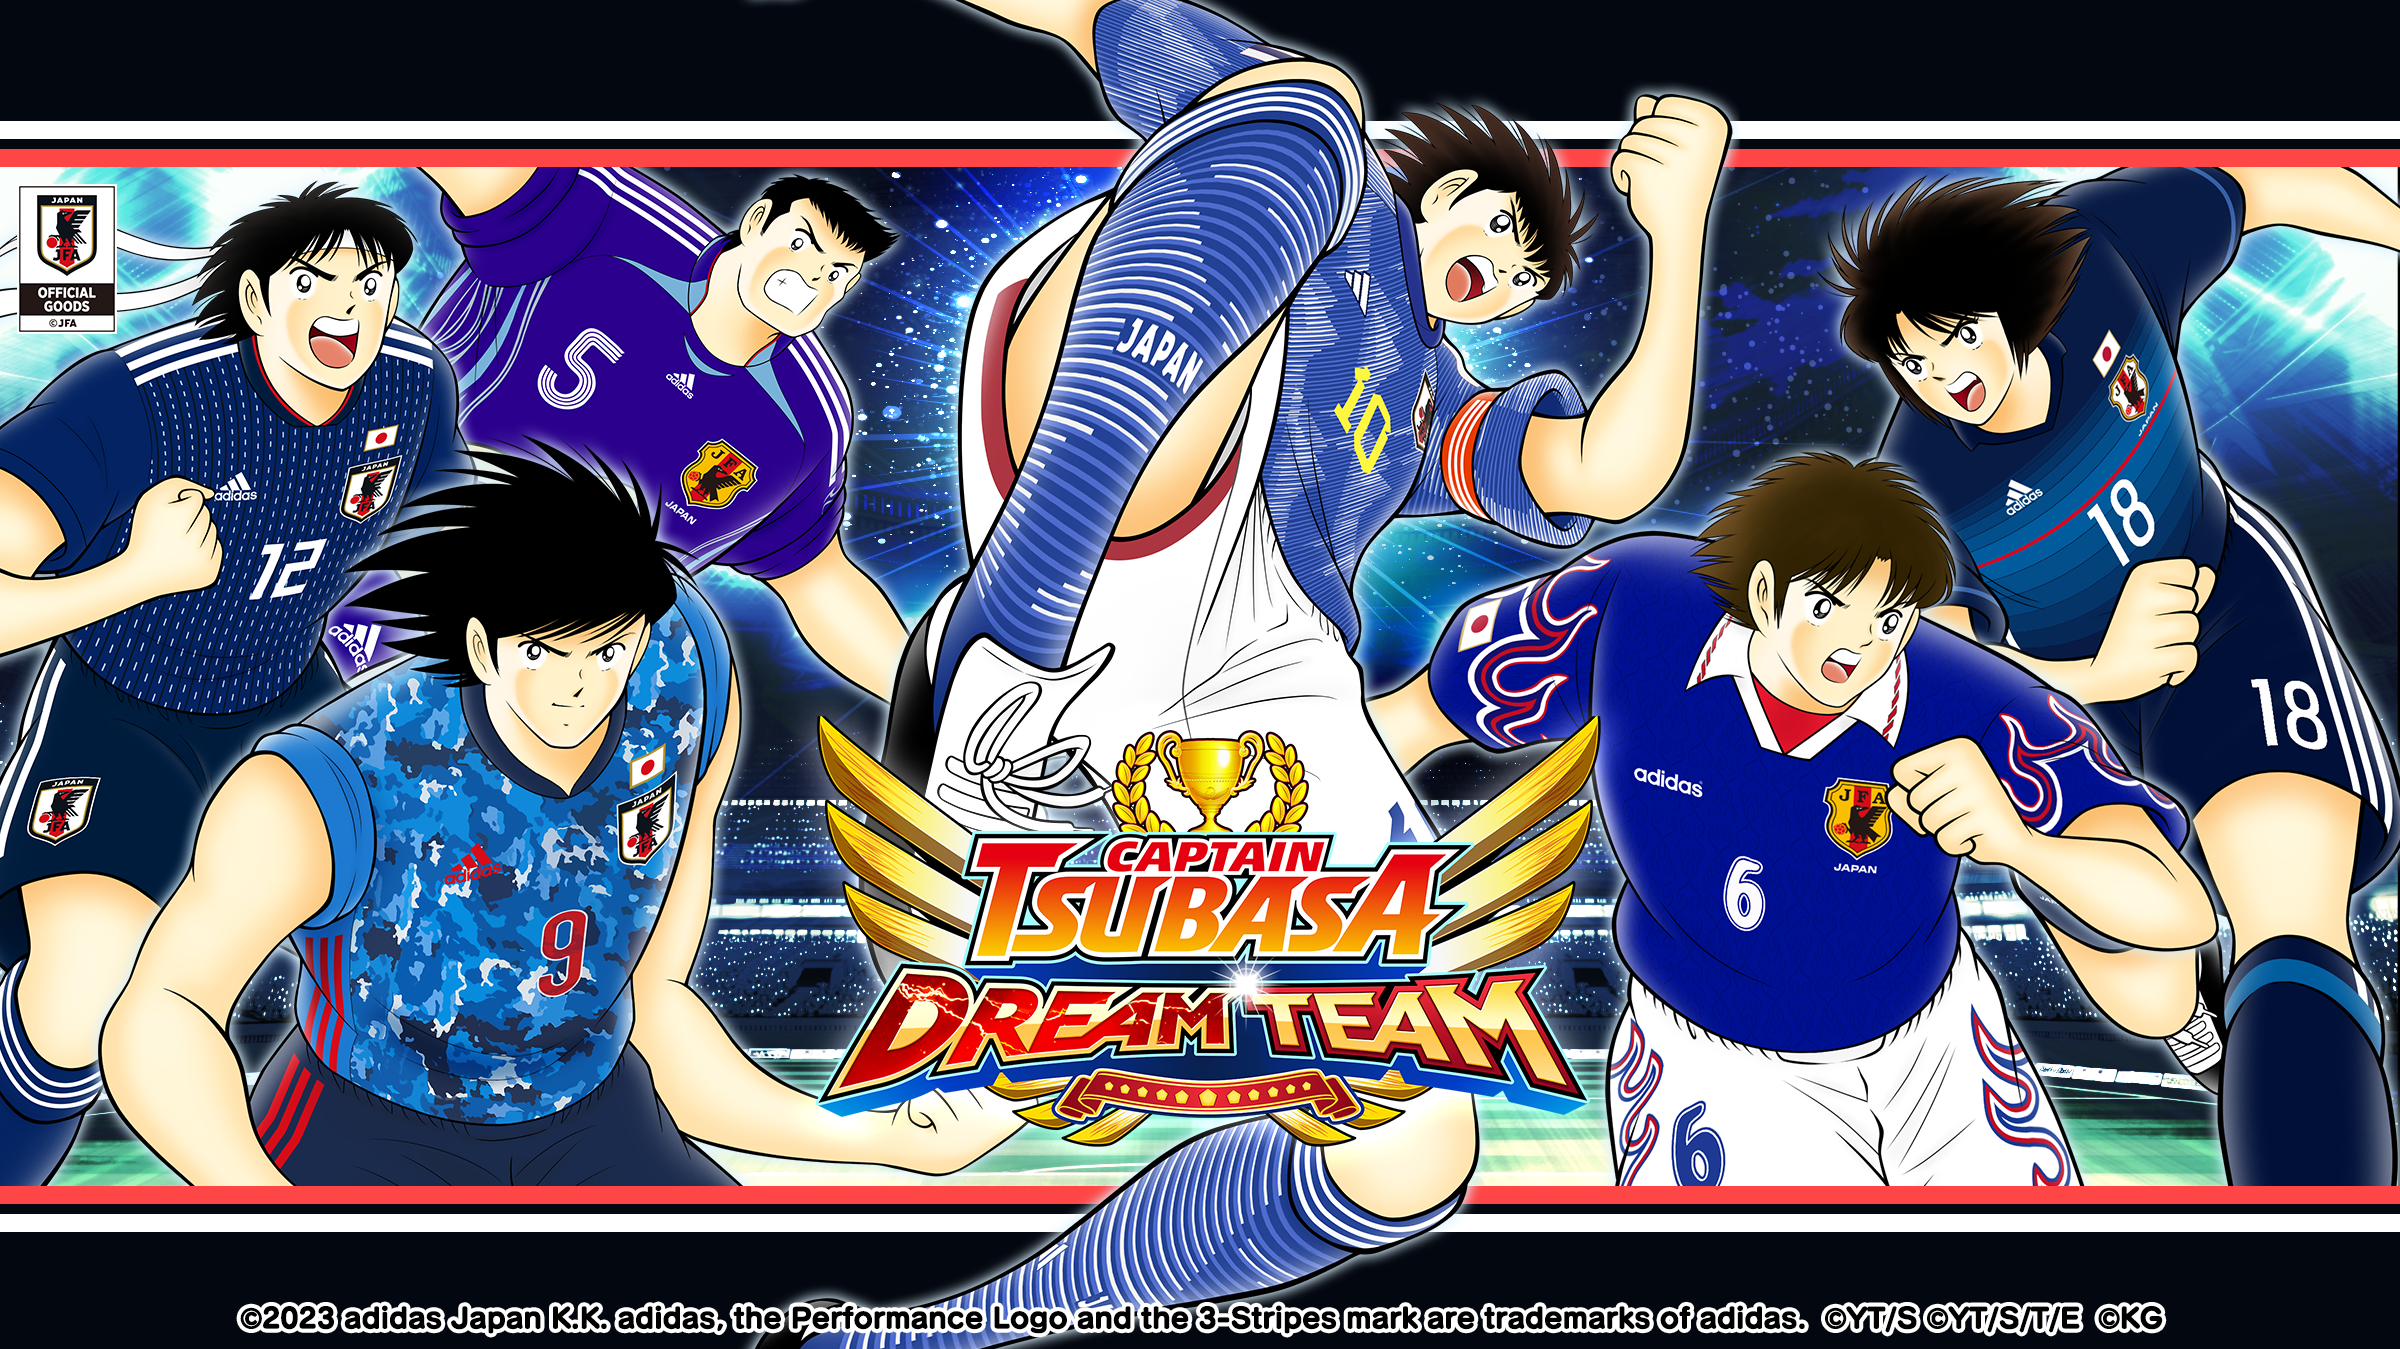 dream team captain tsubasa